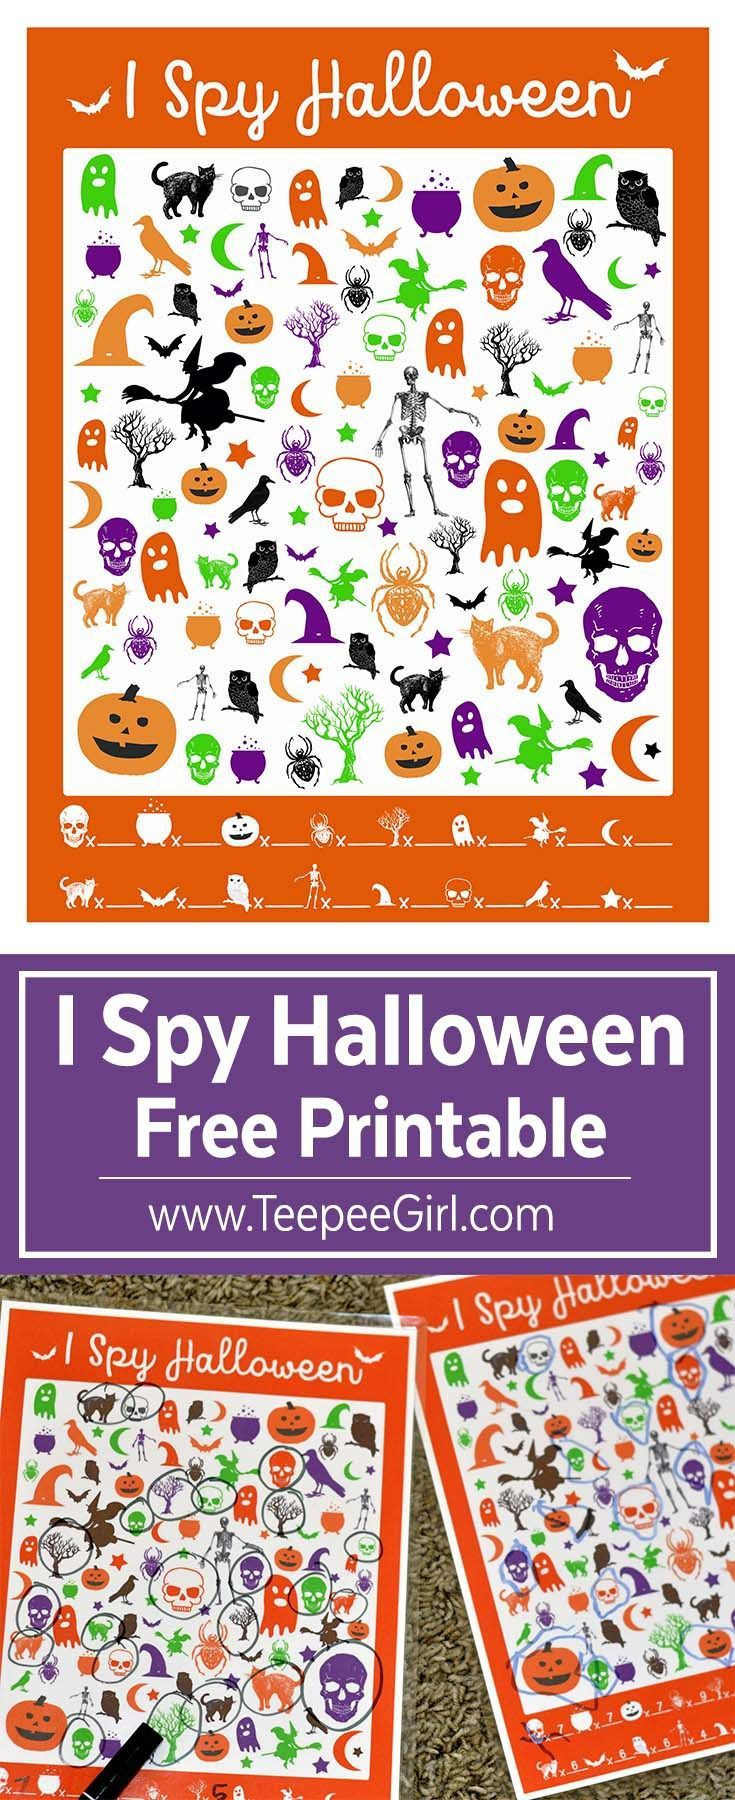 Free Halloween Party Game Ideas
 Free I Spy Halloween Game Free Printables